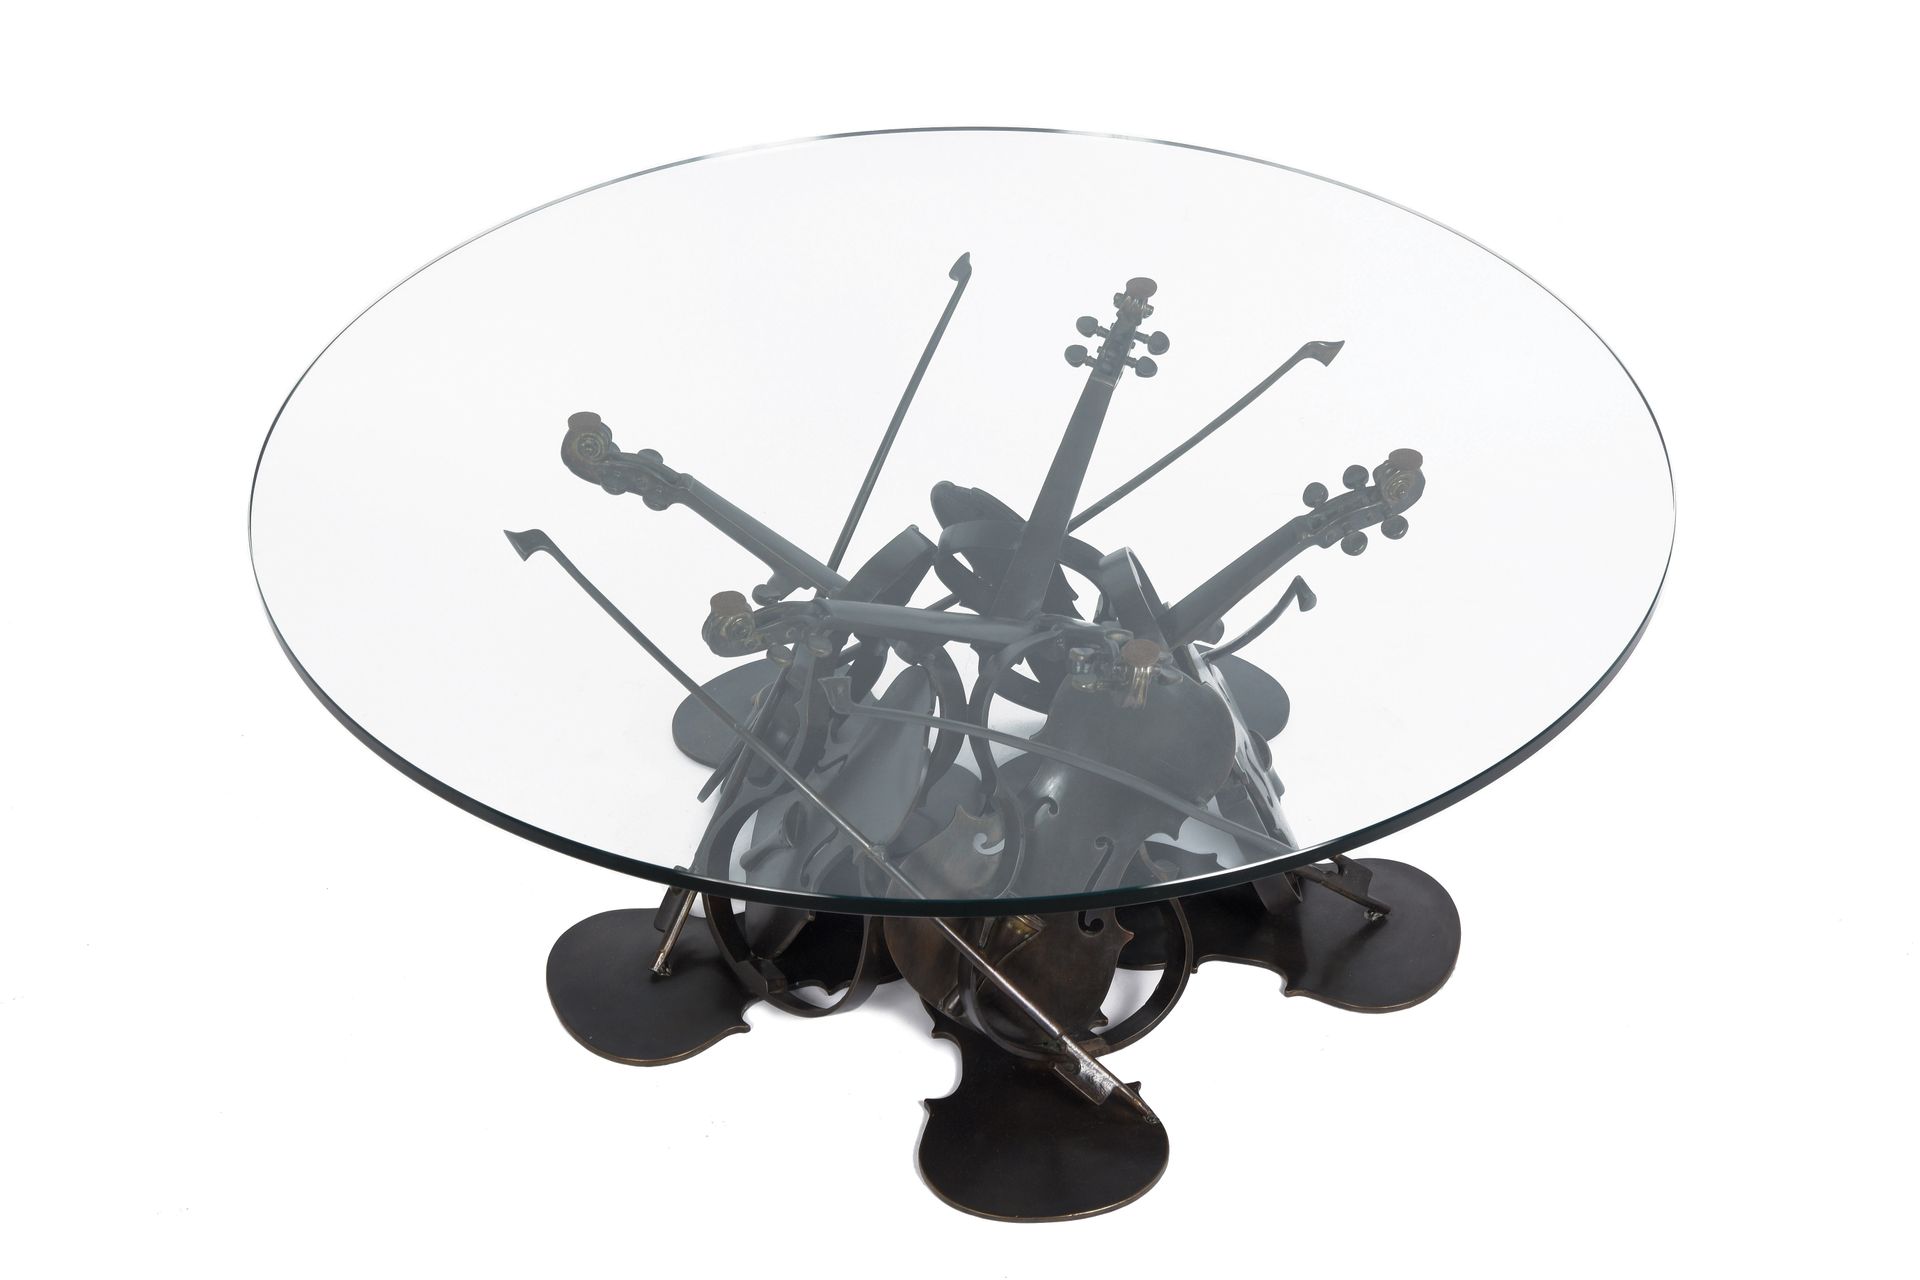 Null 费尔南德斯-阿曼(1928-2005)

小提琴桌, 1995

古铜色底座和圆形玻璃顶

签名

独特的作品

40 x 70 x 70厘米



&hellip;